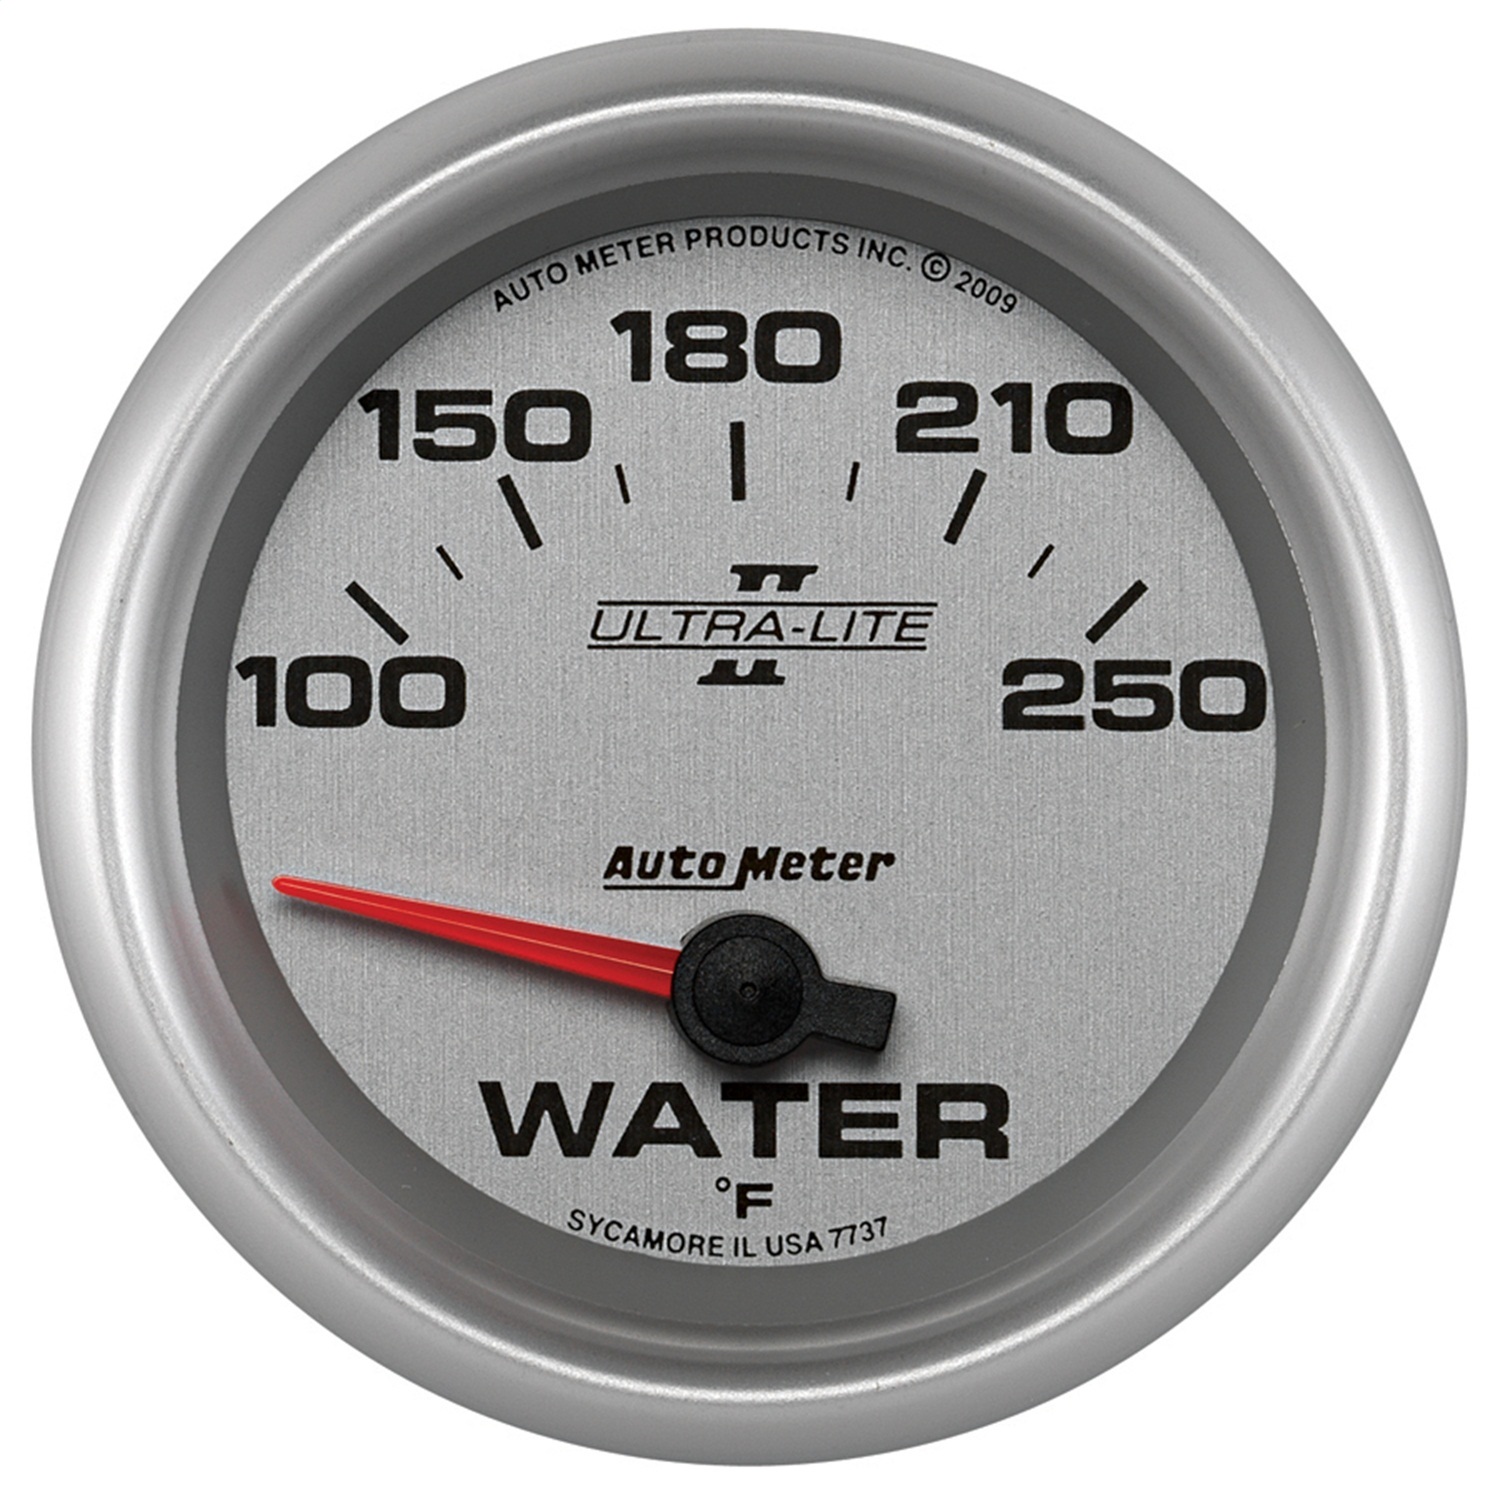 Auto Meter Auto Meter 7737 Ultra-Lite II; Electric Water Temperature Gauge